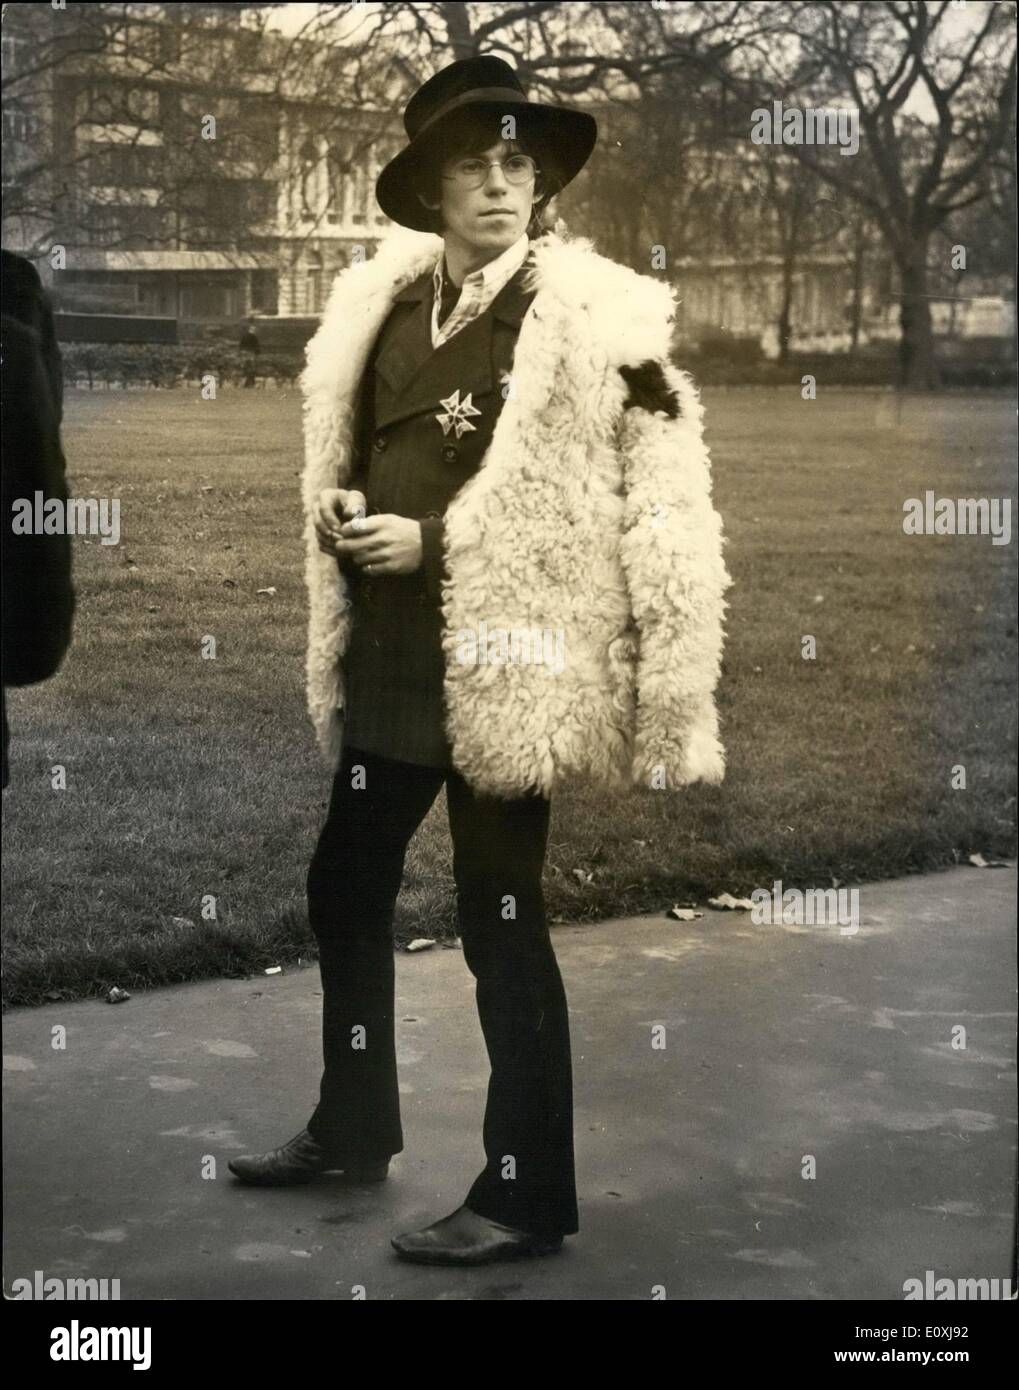 11 gennaio 1967 - 11-1-67 Rolling Stones per Ed Sullivan Show. Vi è stata una foto-chiamata a Londra questo pomeriggio per i Rolling Stones, prima di loro in volo per gli Stati Uniti il venerdì il tredicesimo ad intraprendere la costa a costa Ed Sullivan Show sulla televisione di domenica il 15th. Le pietre di volare per tornare in Inghilterra per fare la loro prima apparizione di sempre la domenica seguente sul palladio show televisivo. La foto mostra: uno dei Rolling Stones, Keith Richards, raffigurato nel parco verde di oggi. Foto Stock